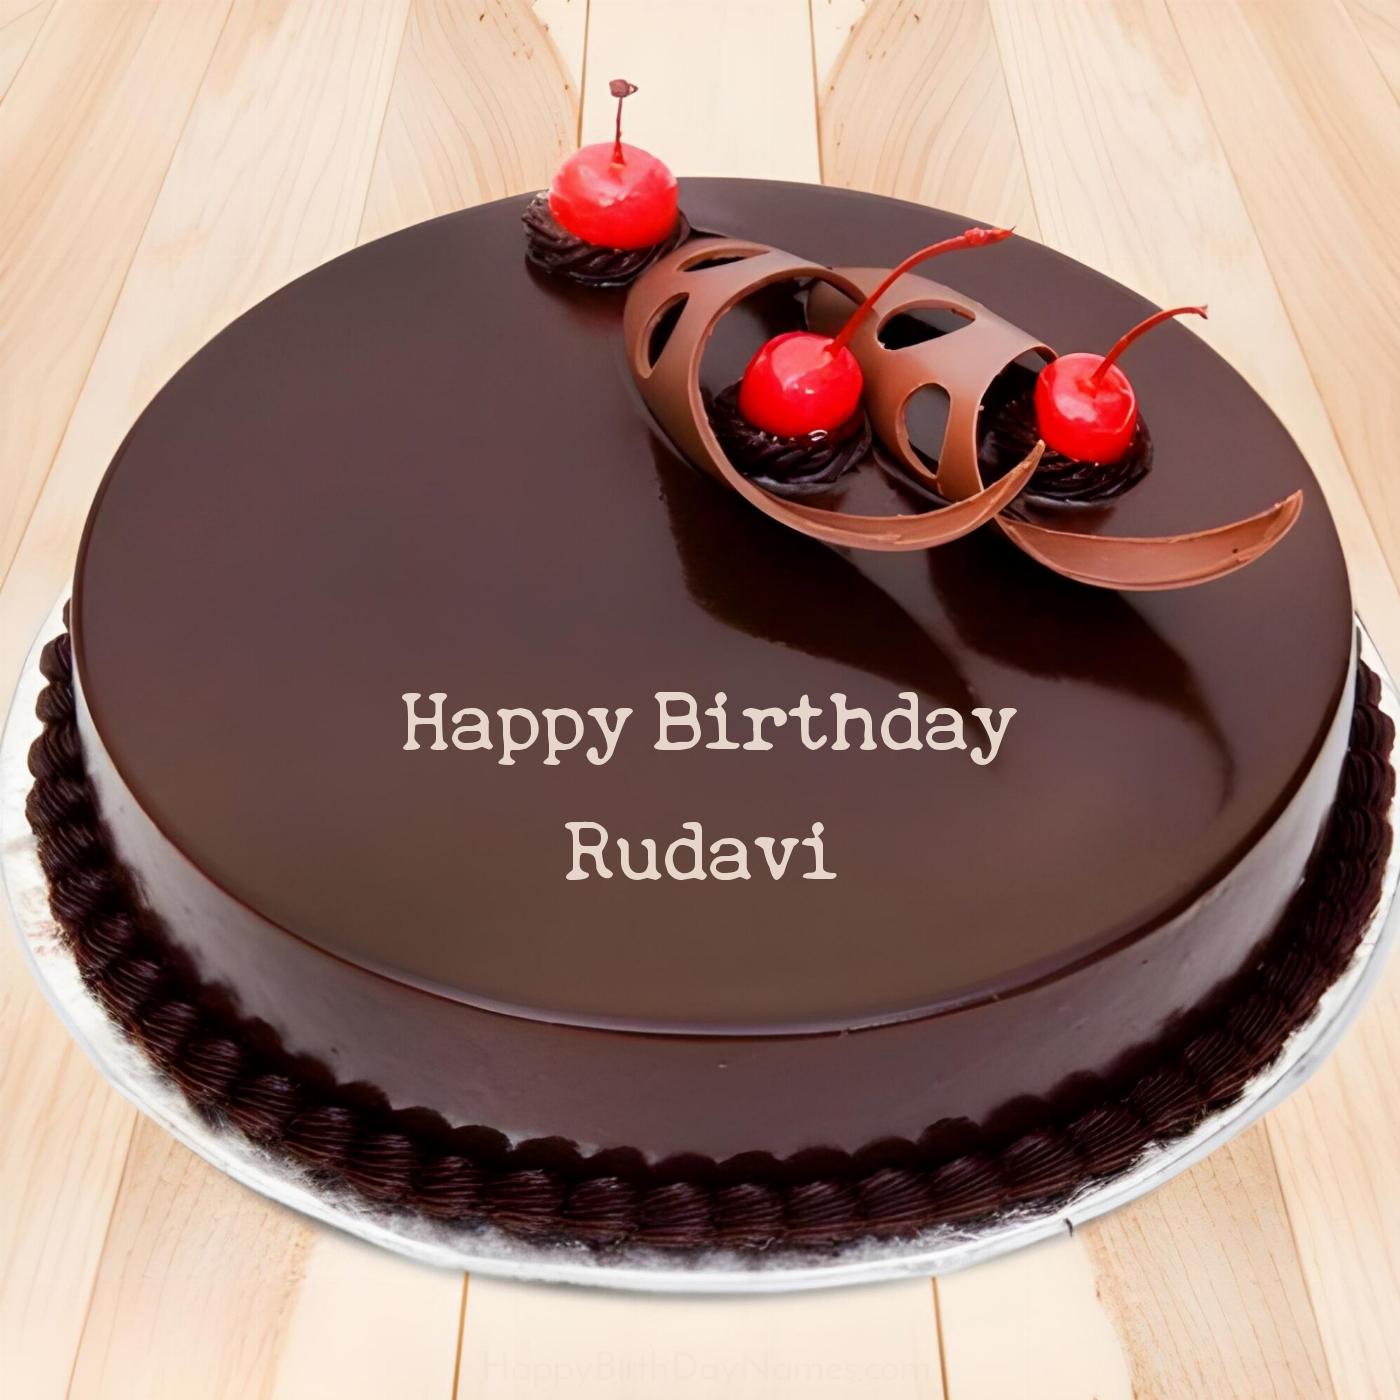 Happy Birthday Rudavi Chocolate Cherry Cake